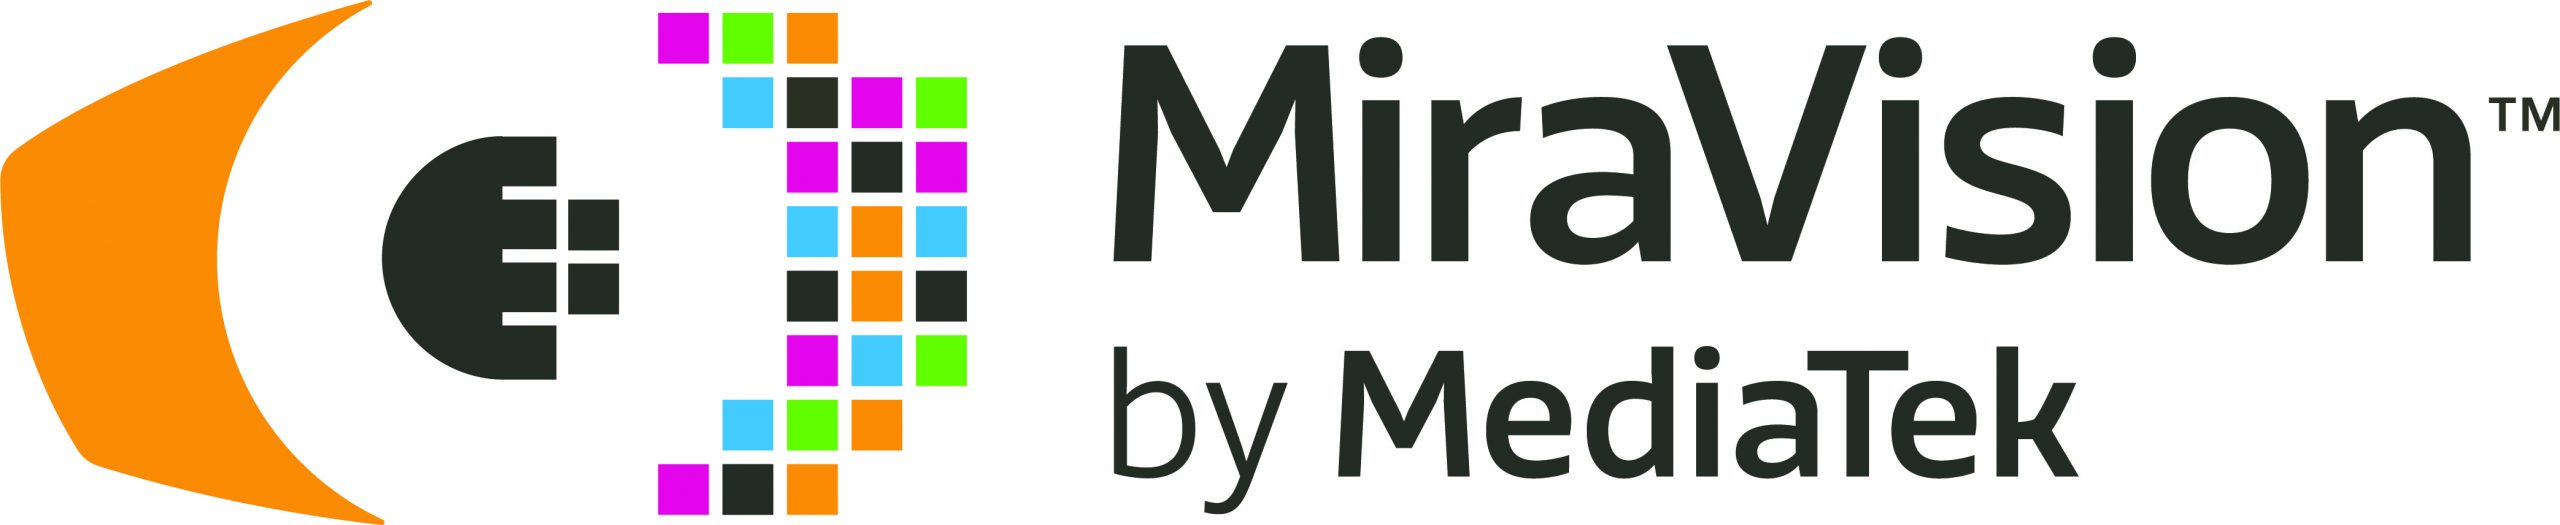 MiraVision mejora la calidad de imagen en los celulares.- Blog Hola Telcel